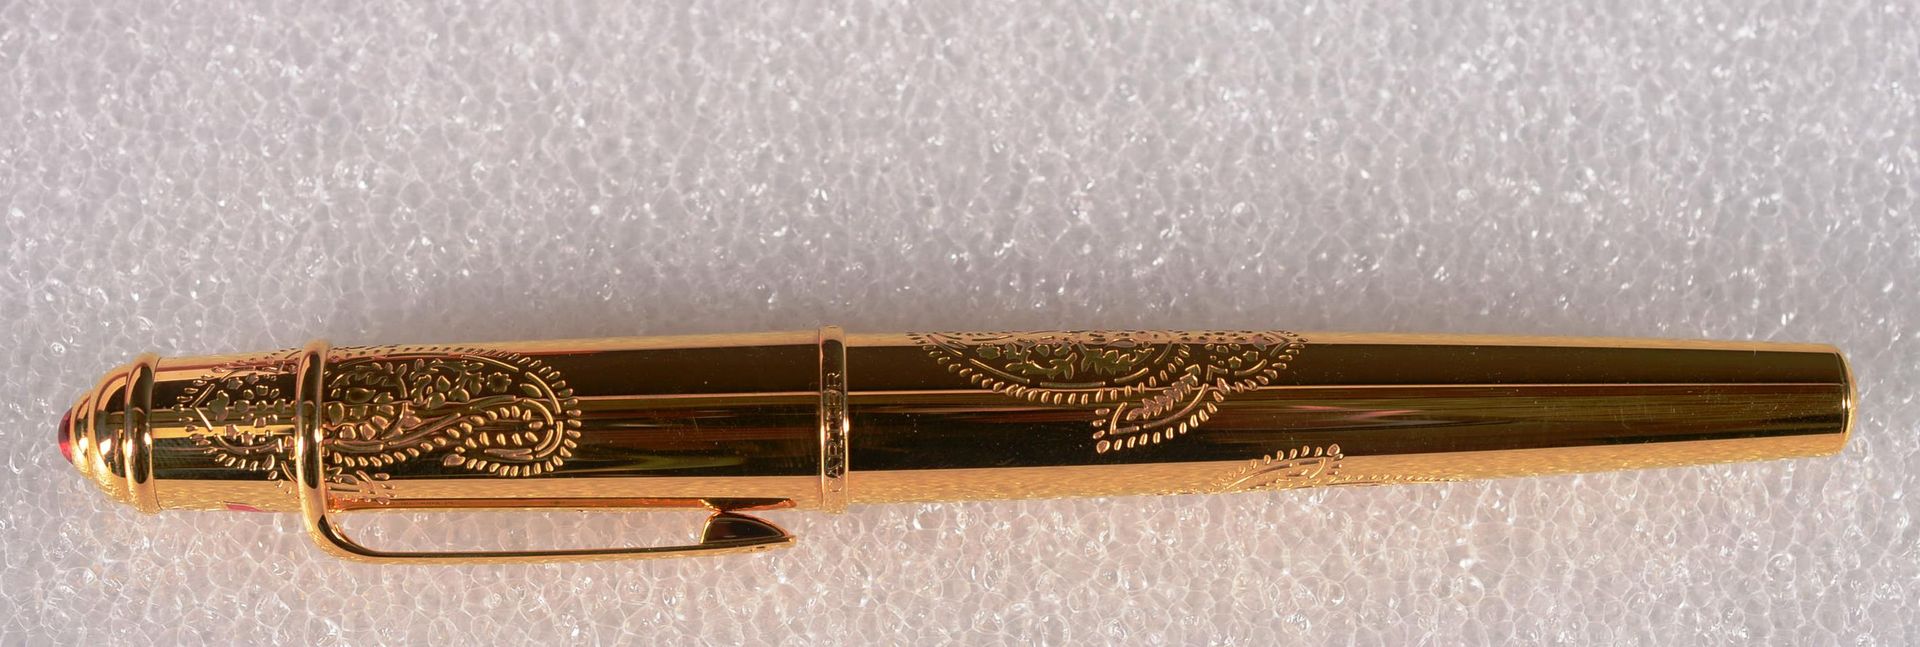 CARTIER, Stylo plume 卡地亚

Louis Cartier的限量版钢笔。夹子上的C的签名。编号394 990。